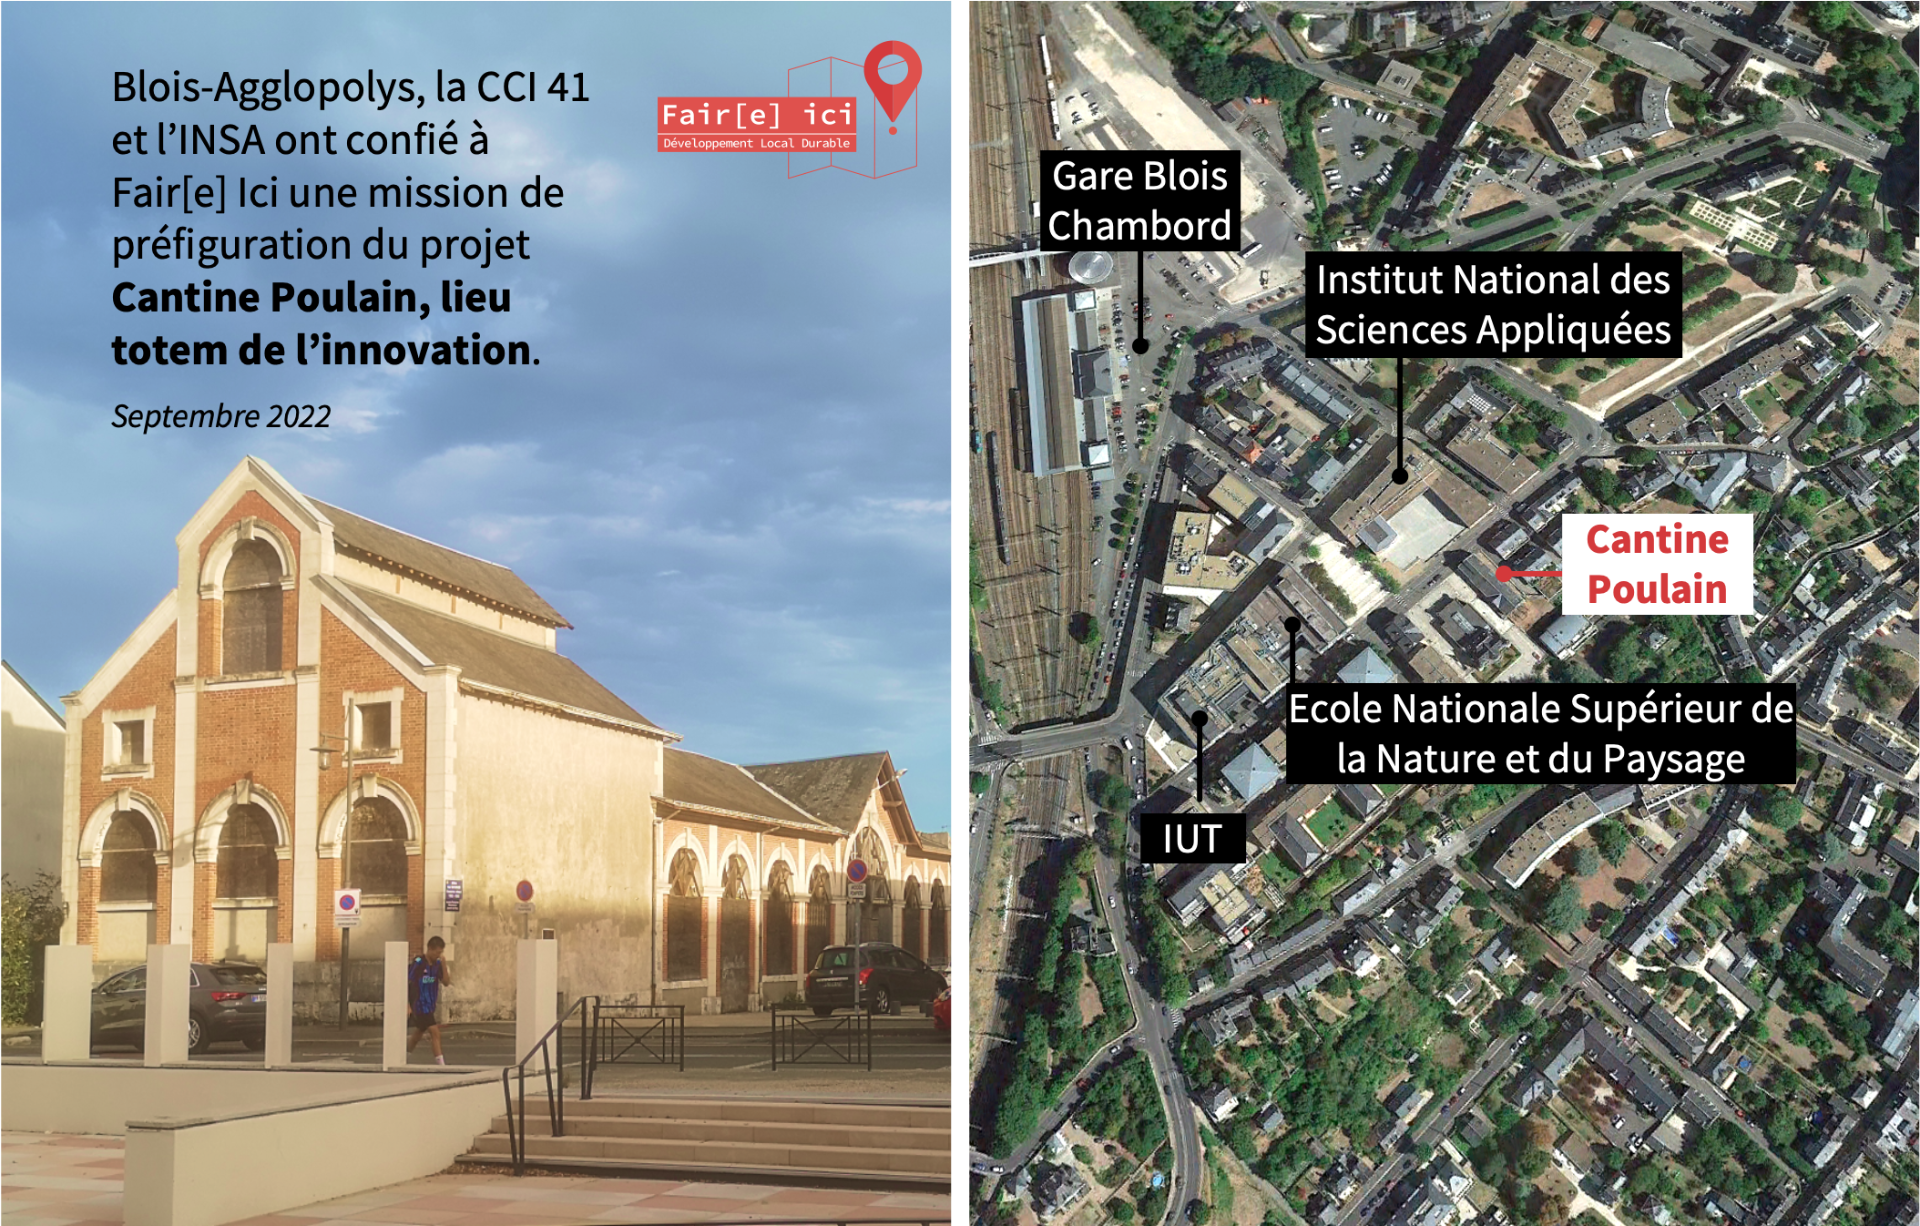 La Cantine Poulain, futur lieu totem de l'innovation à Blois